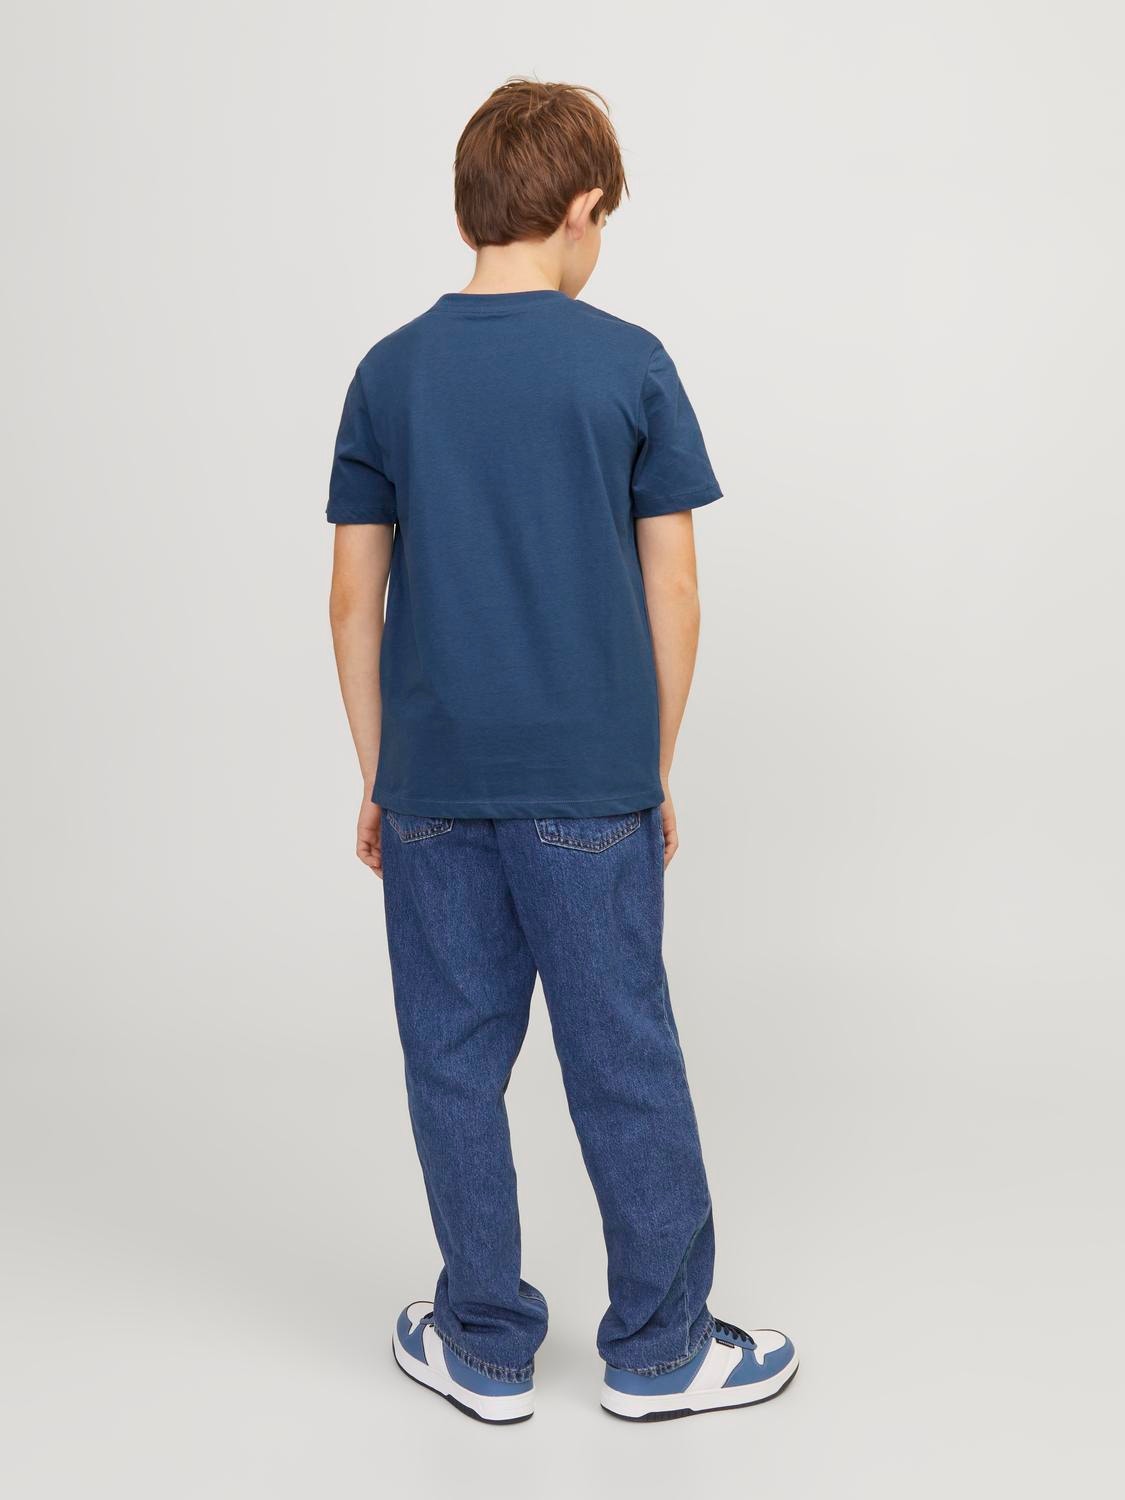 Jack & Jones Gedrukt T-shirt Voor jongens -Ensign Blue - 12237441